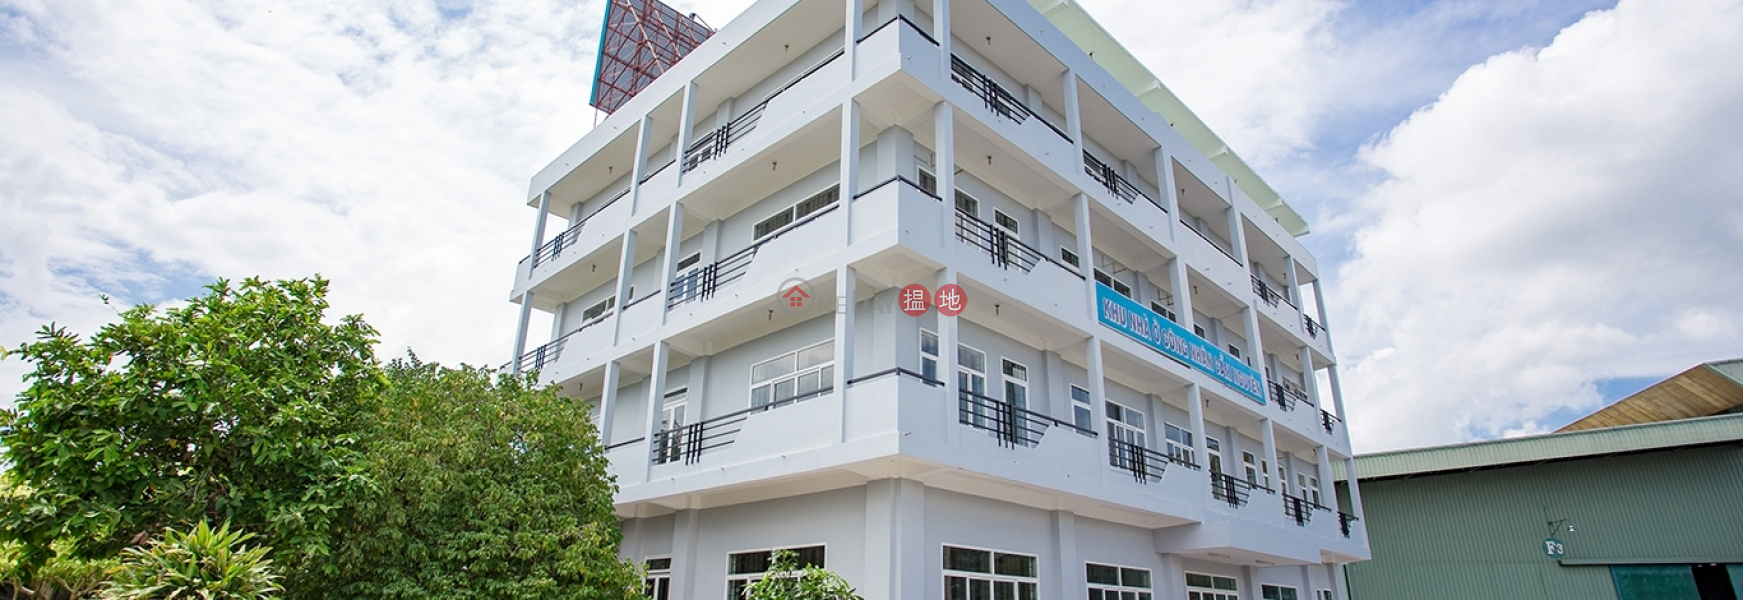 Cam Nguyen Apartment (Căn hộ Cẩm Nguyên),Cam Le | (1)